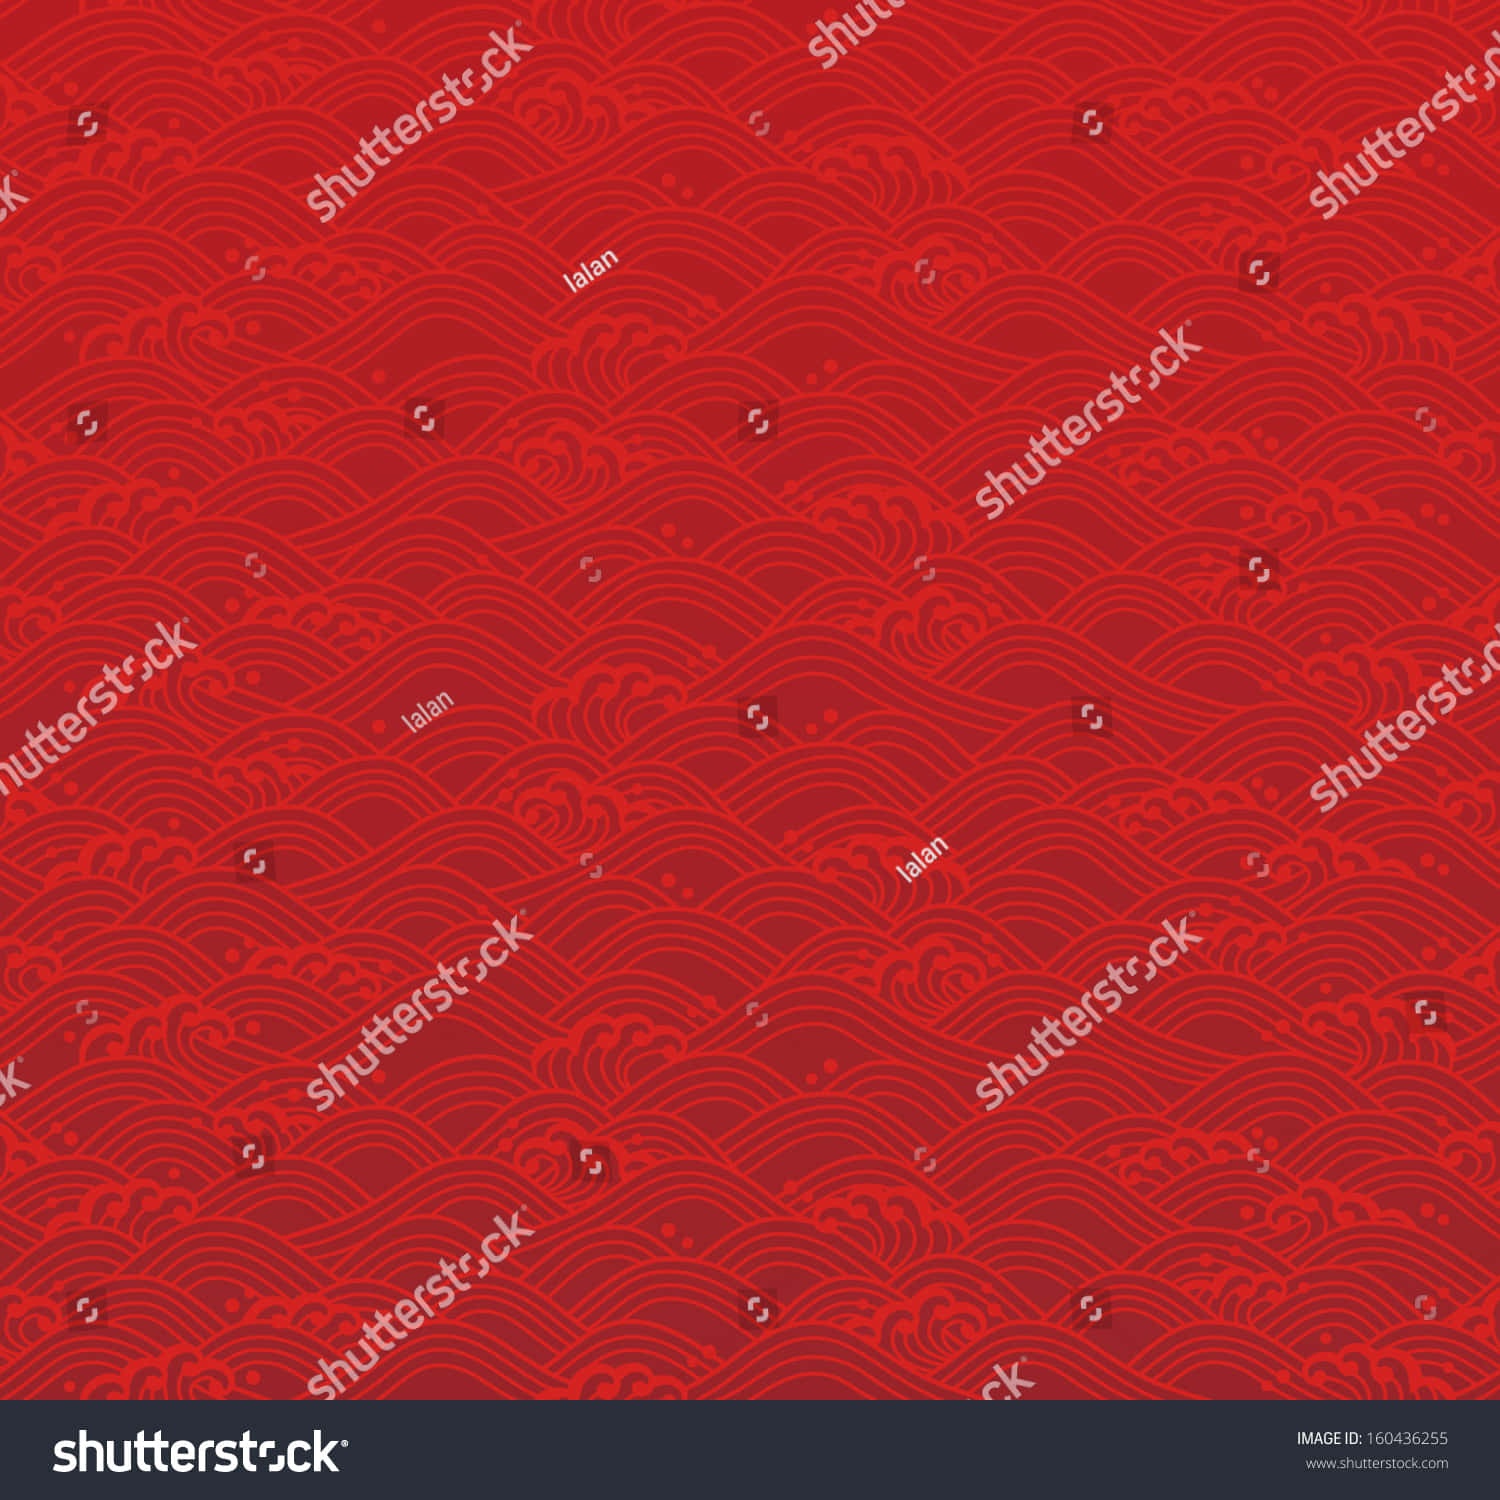 Roterchinesischer Wellenmuster-hintergrund, Lizenzfreie Vektorgrafik. Wallpaper